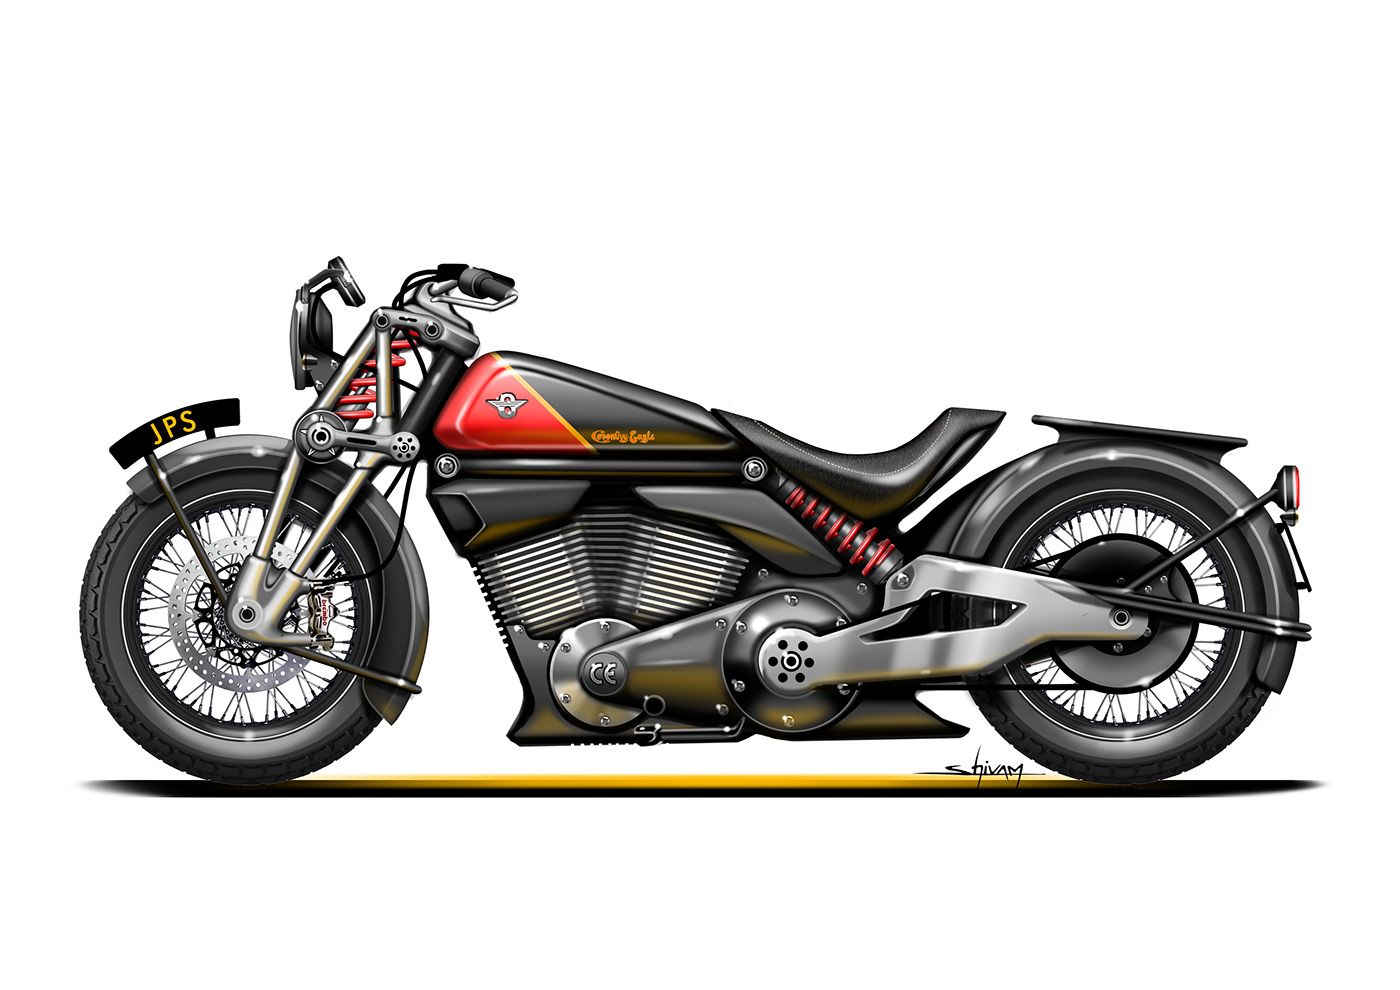 Bike concept Digital Art  motorbike motorcycle motorcycle sketching photoshop revival Transportation Design Vintage Design